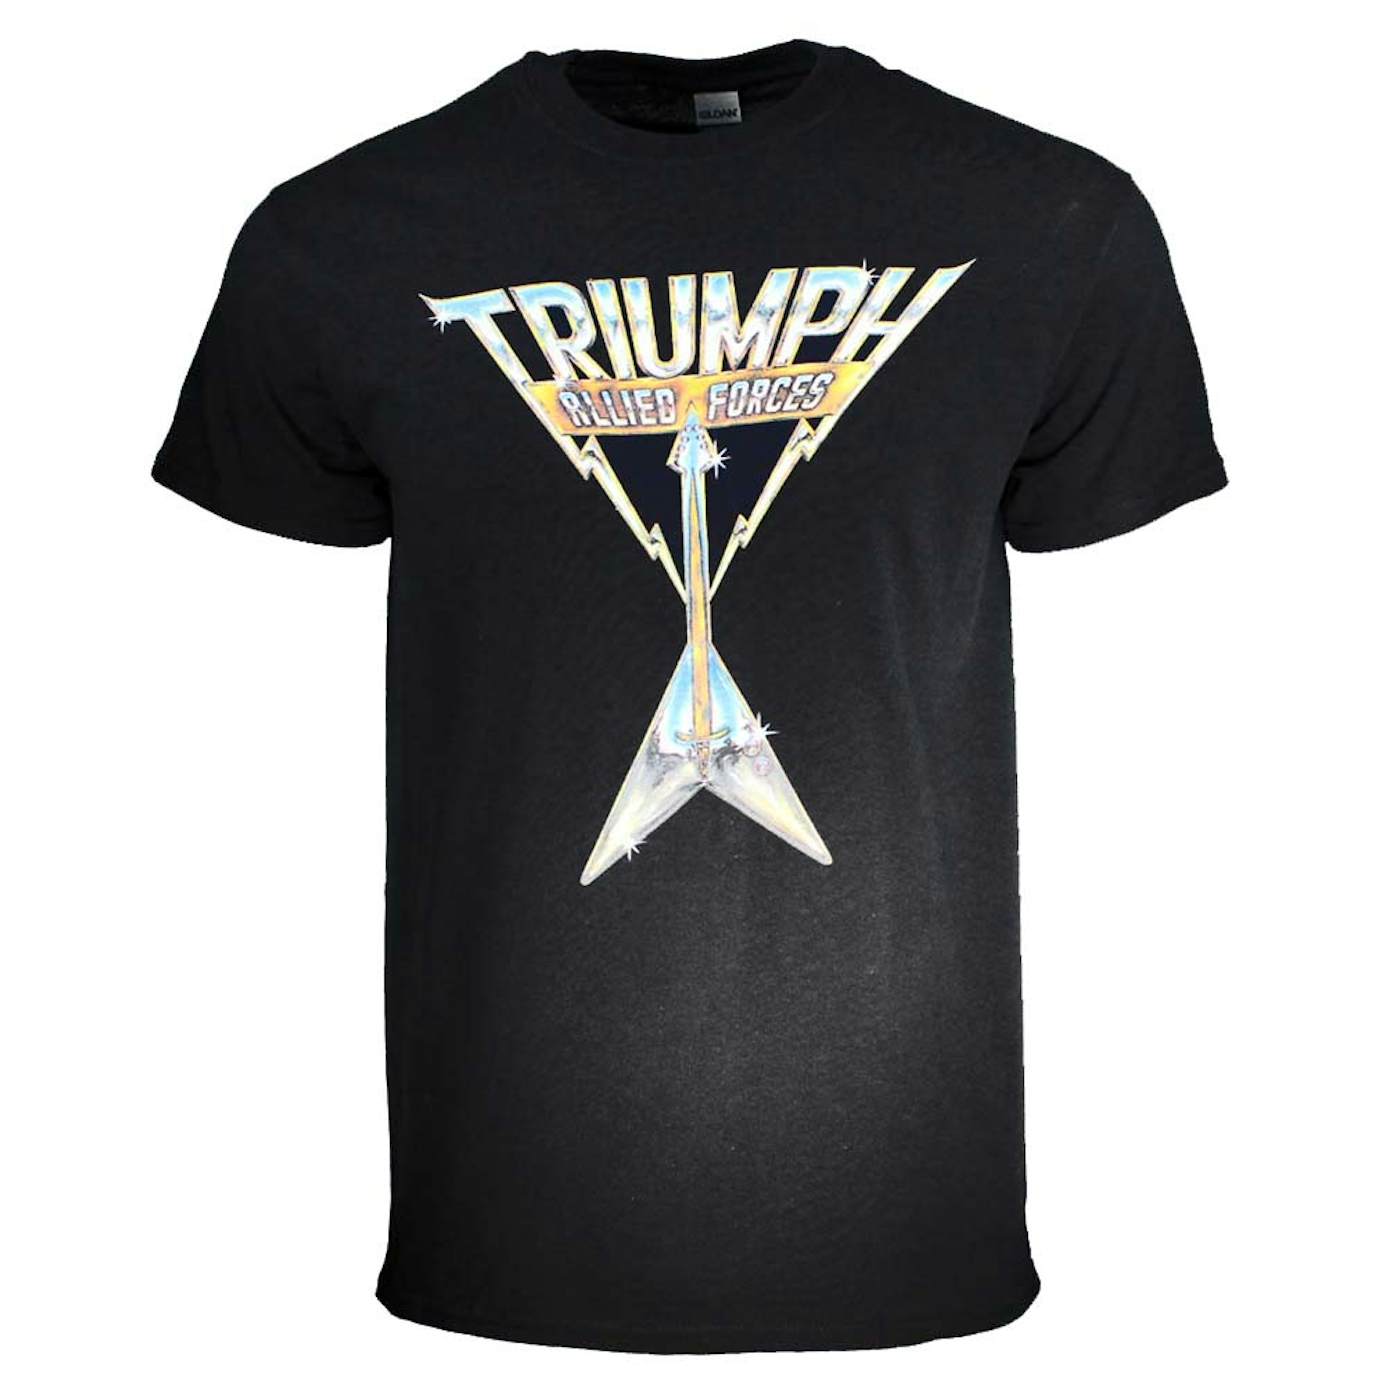 Triumph T Shirt | Triumph Allied Forces T-Shirt